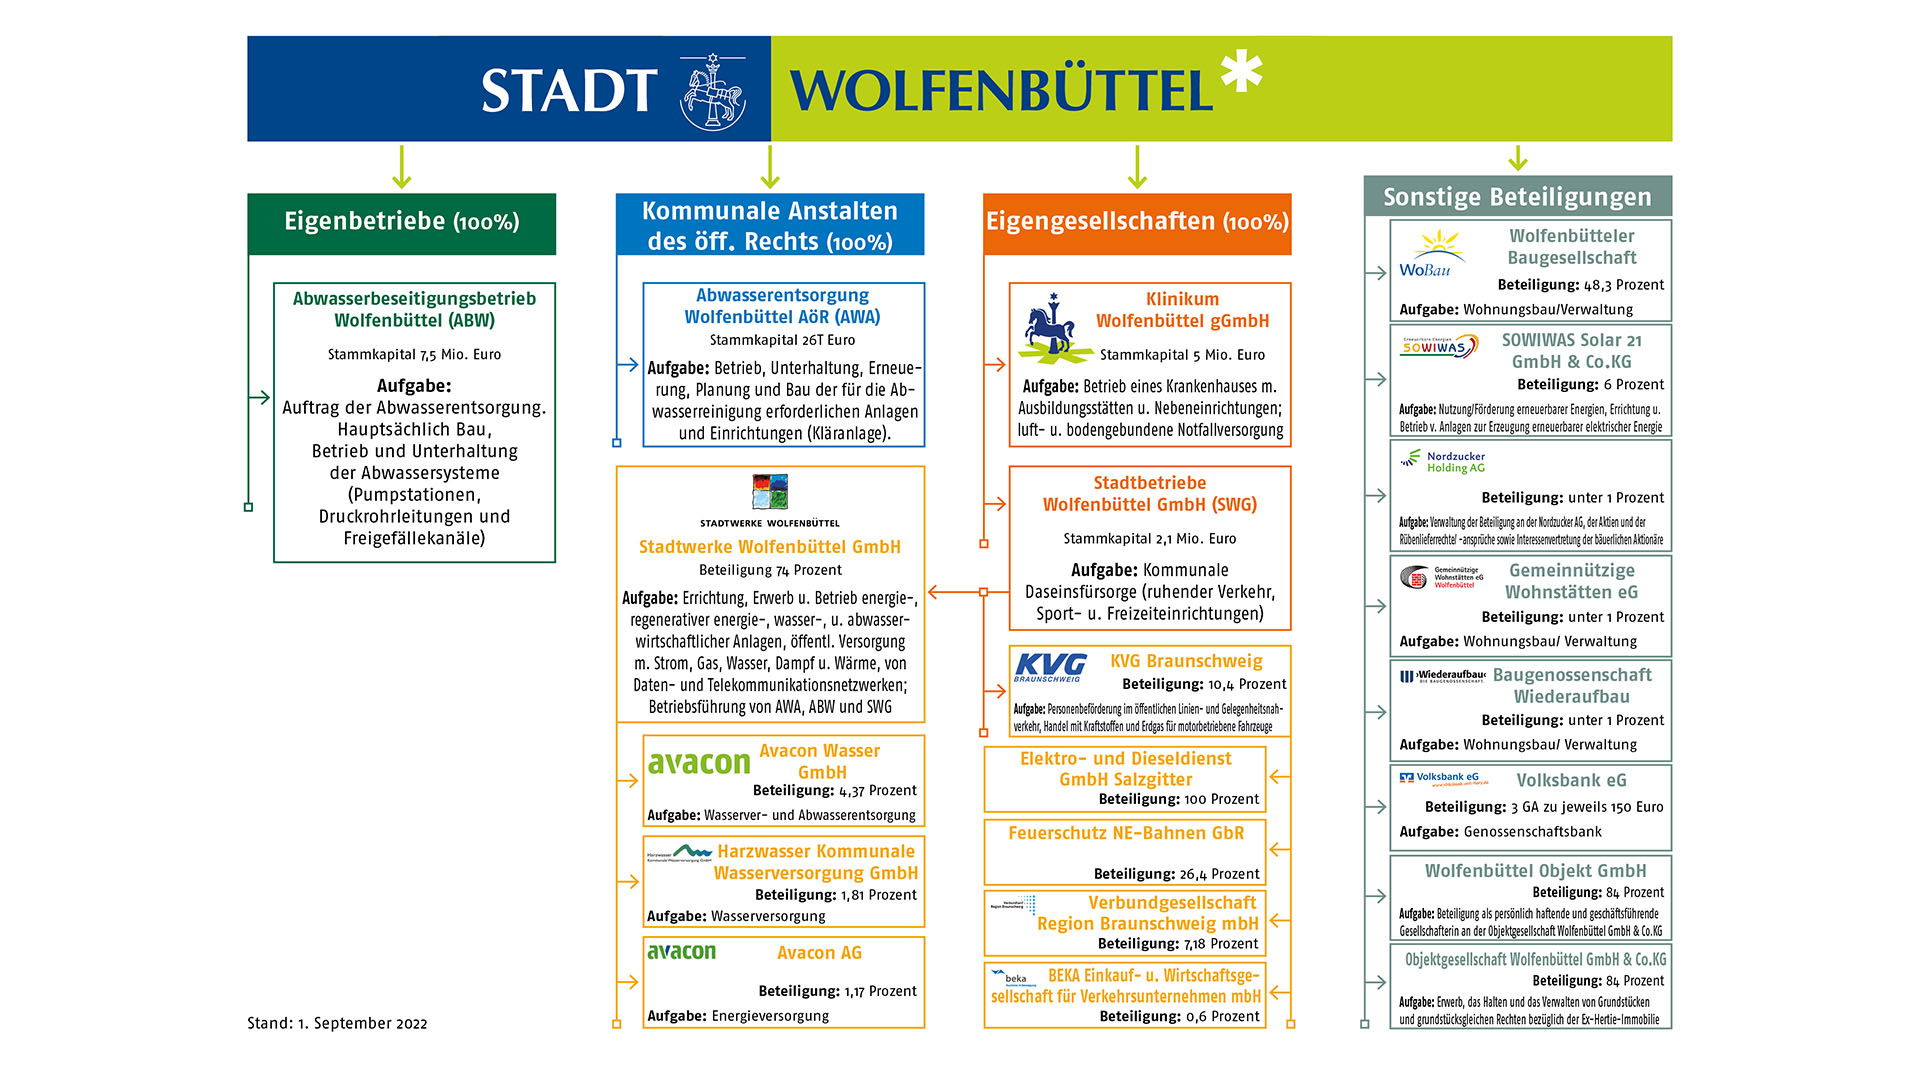 Auf einem Informationsblatt ist die Aufbaustruktur des Konzerns Stadt Wolfenbüttel aufgeführt. Die vier Säulen umfassen "Eigenbetriebe (100%), Kommunale Anstalten des öffentlichen Rechts (100%), Eigengesellschaften (100%) und Sonstige Beteiligungen".